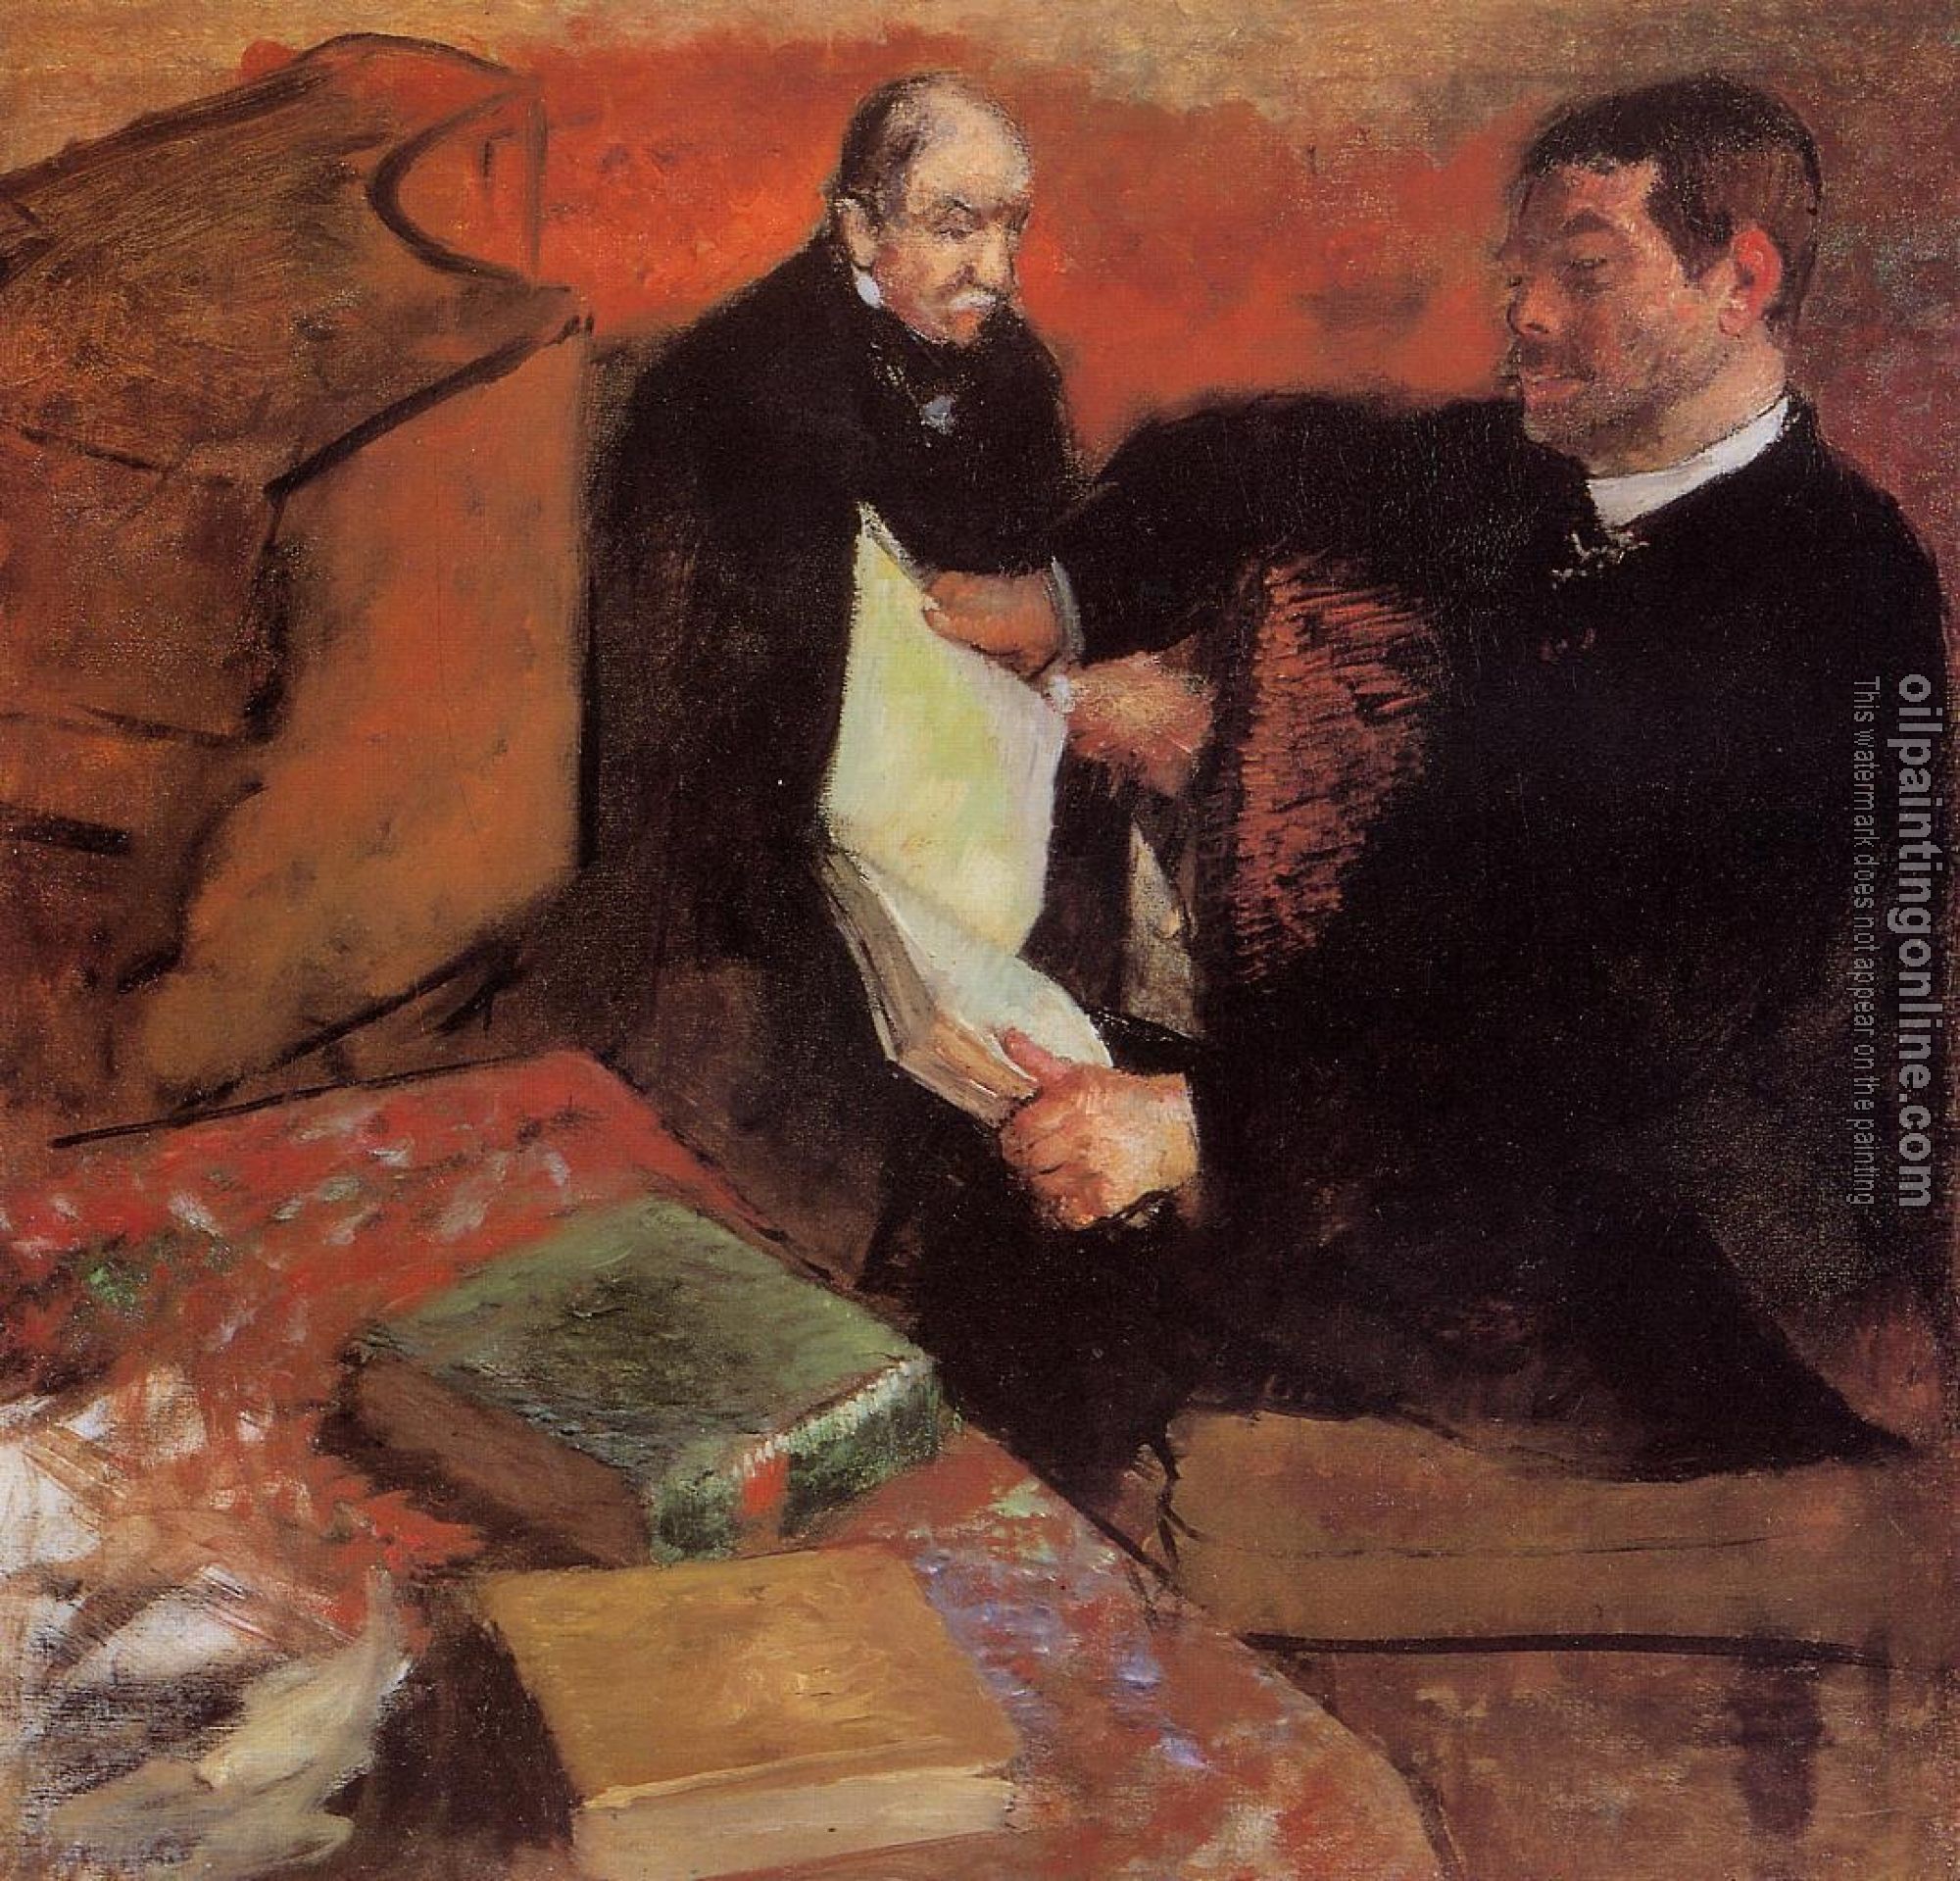 Degas, Edgar - Pagan and Degas' Father